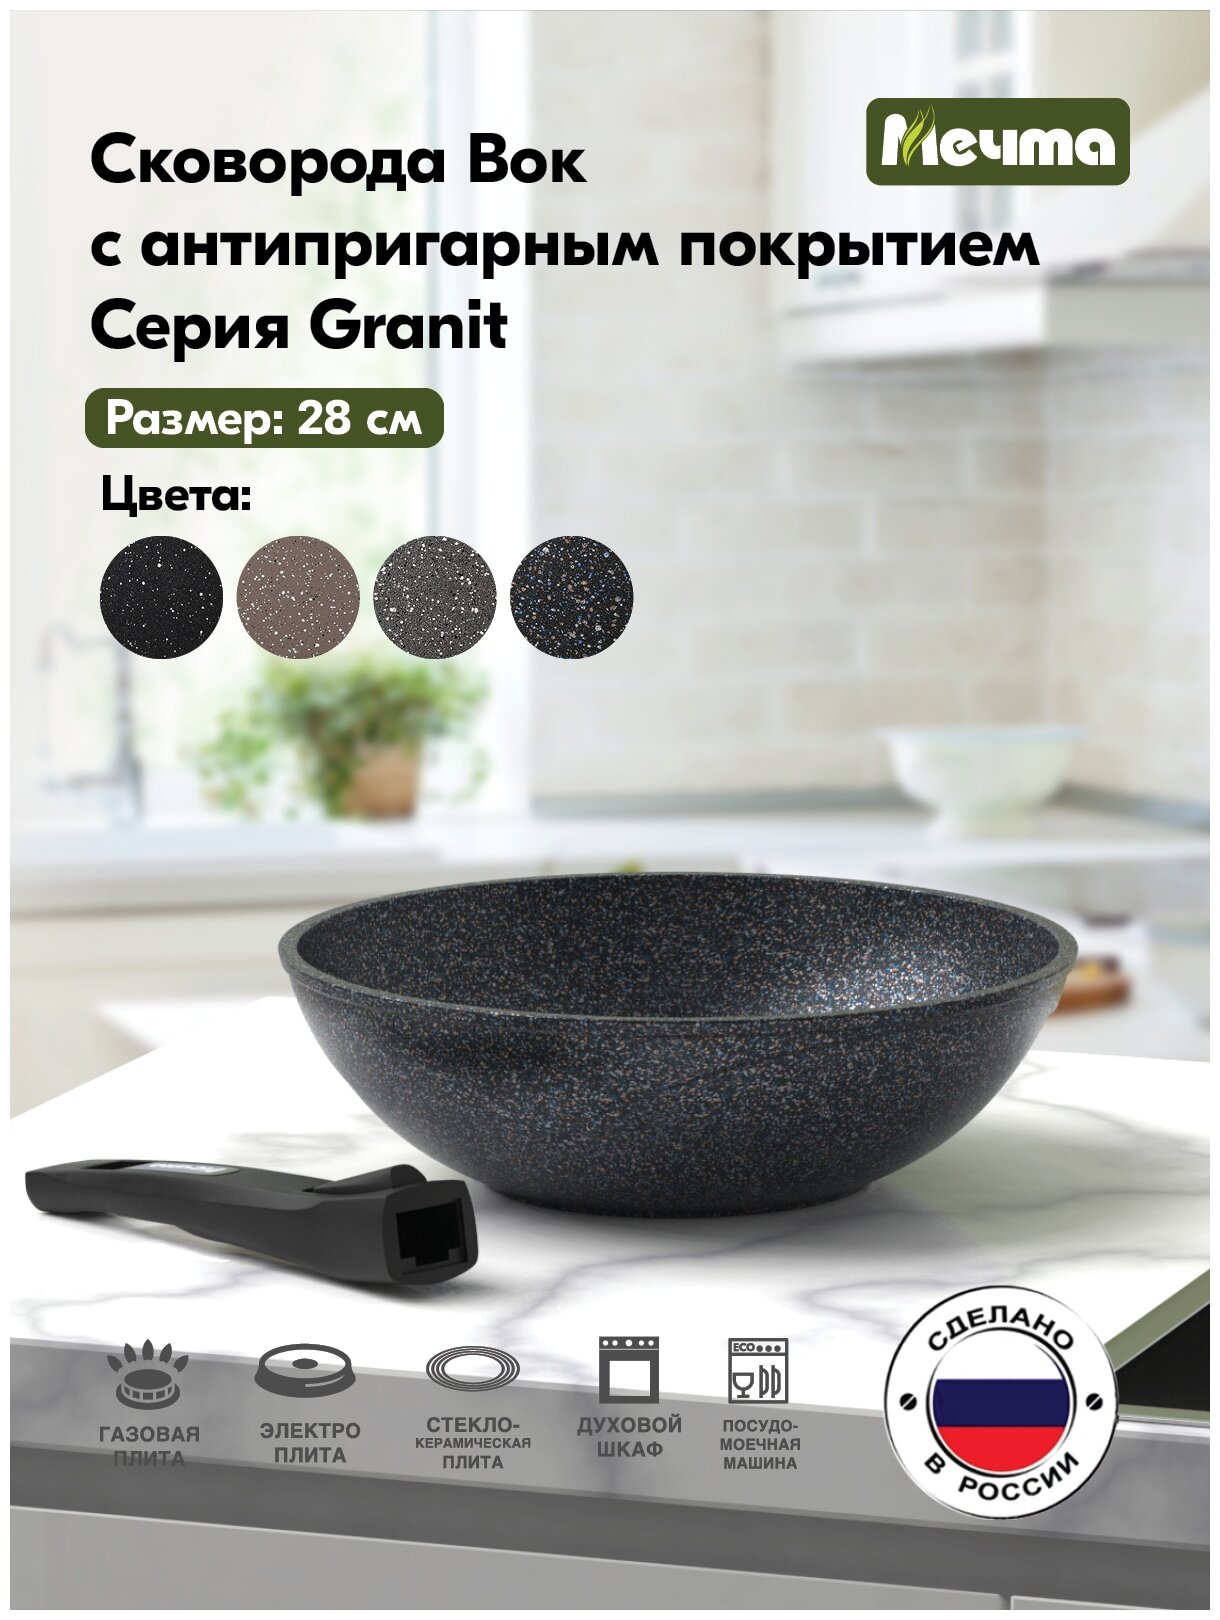 Сковорода wok мечта Гранит 28 см., арт. 078803